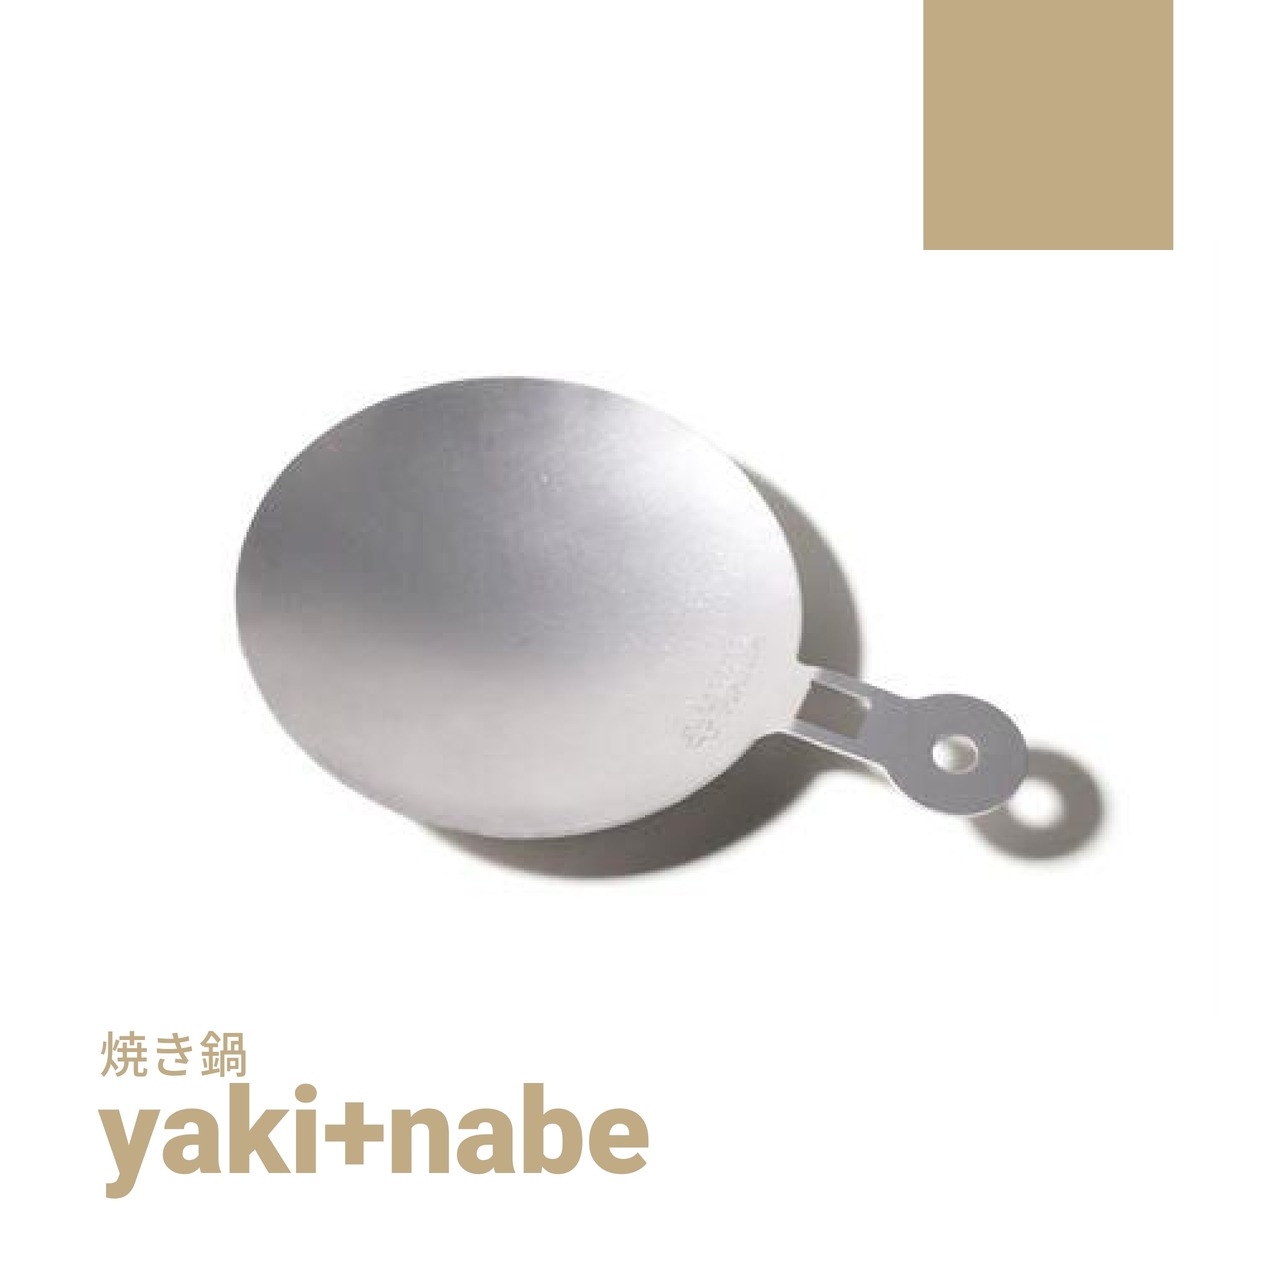 yaki + nabe [焼き鍋]